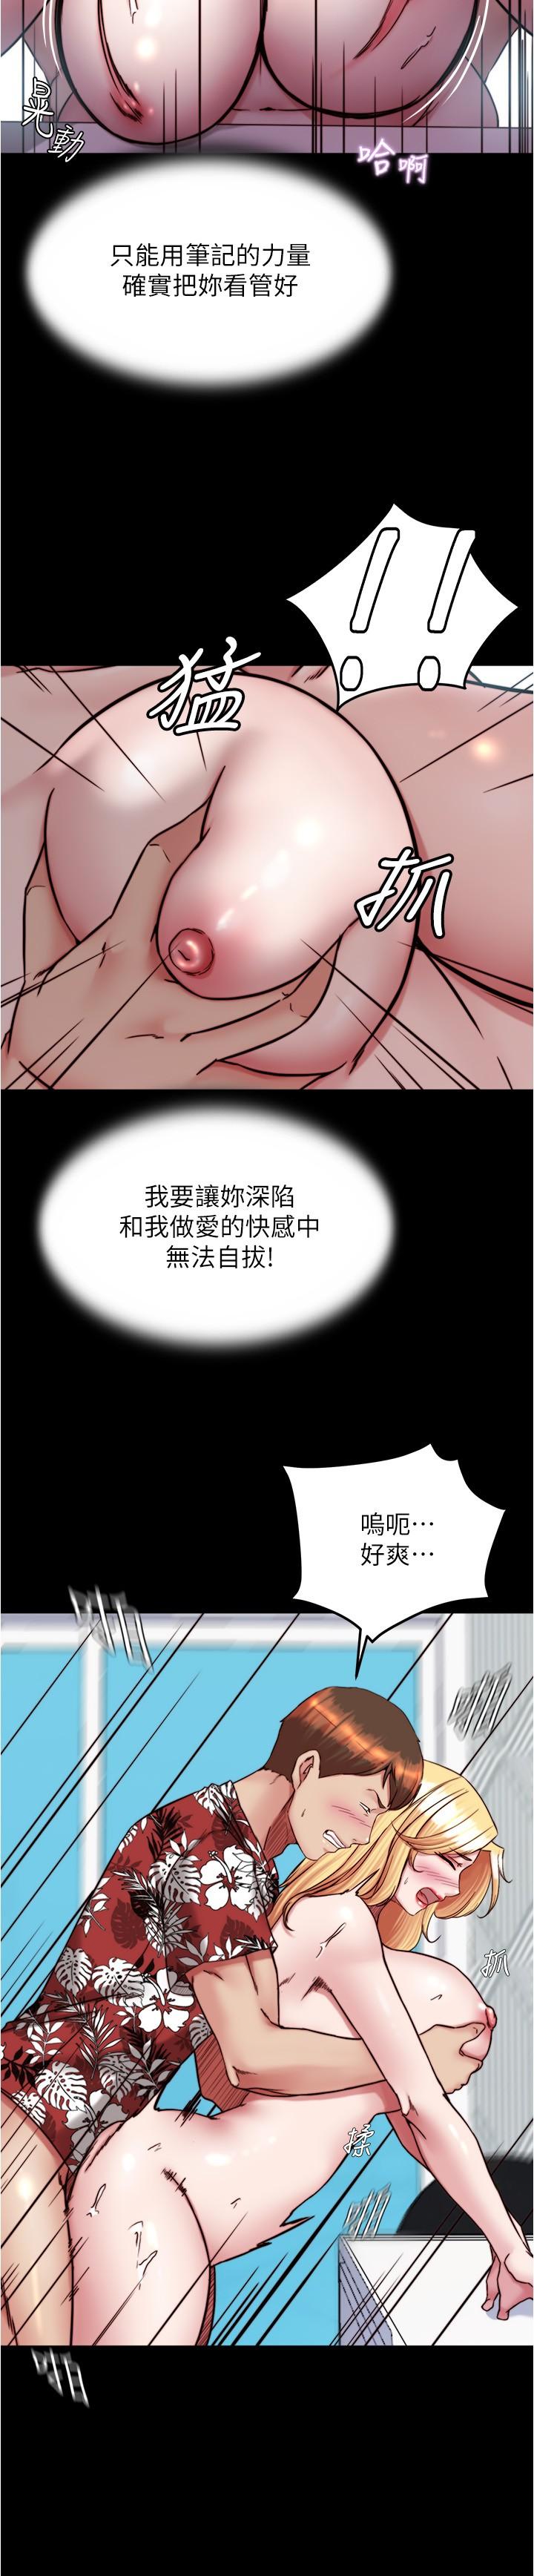 韩国污漫画 小褲褲筆記 第138话-成为性奴隶的穗桦 11